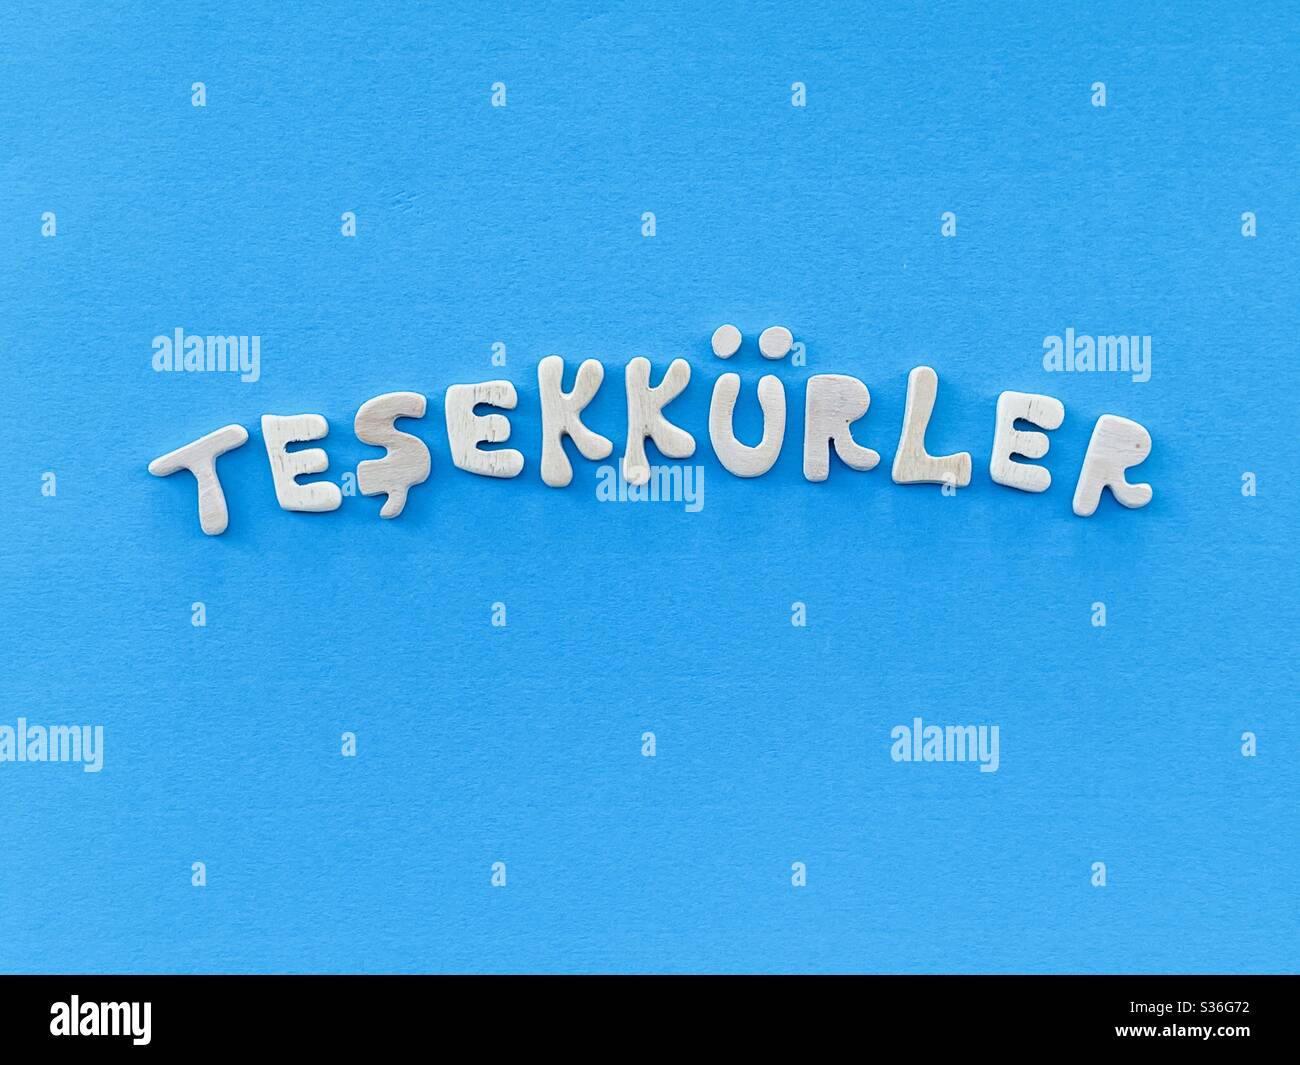 Teşekkürler, grazie in lingua turca composto da lettere in legno fatte a mano su colore blu Foto Stock